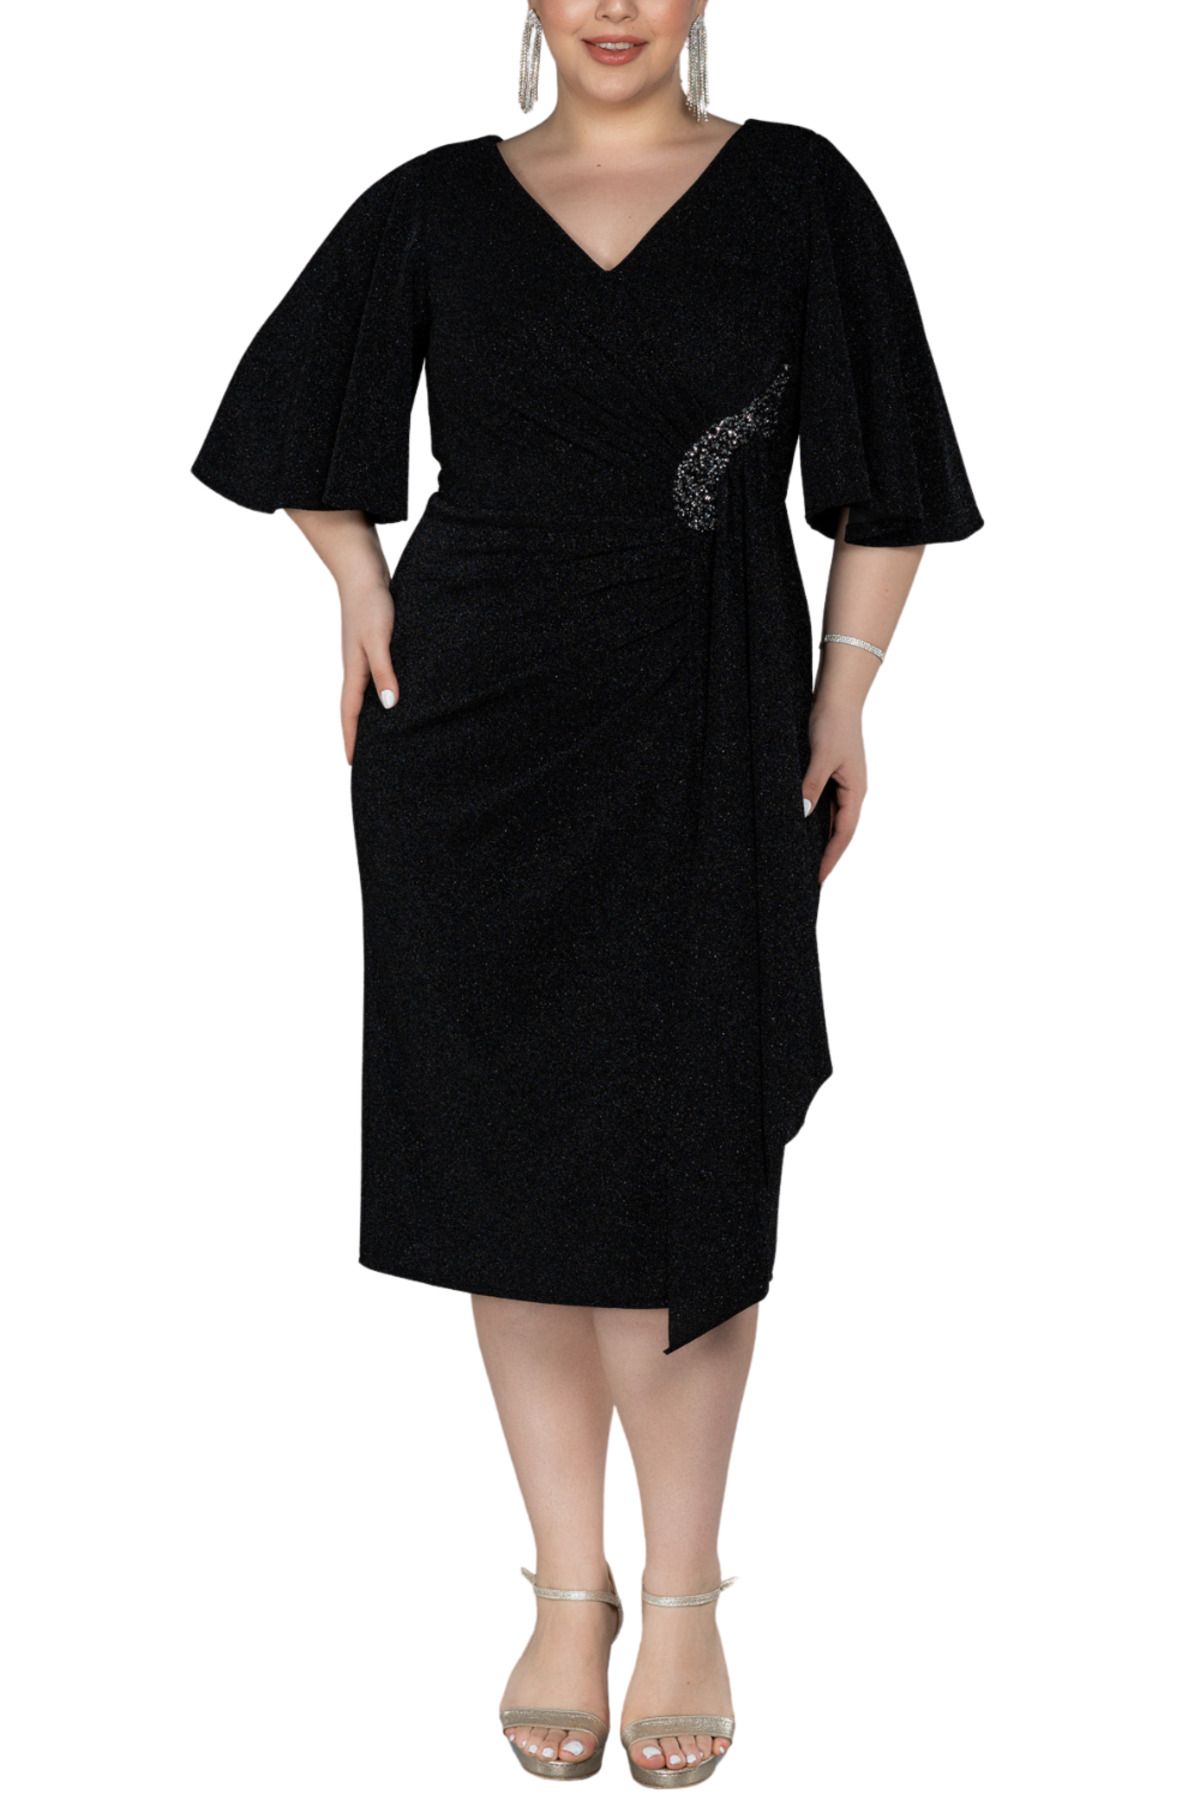 Arden Siyah Büyük Beden Kısa Abiye Elbise, Midi Simli Kısa Kol Kokteyl Elbisesi, Düğün Anne Kıyafeti,46-56